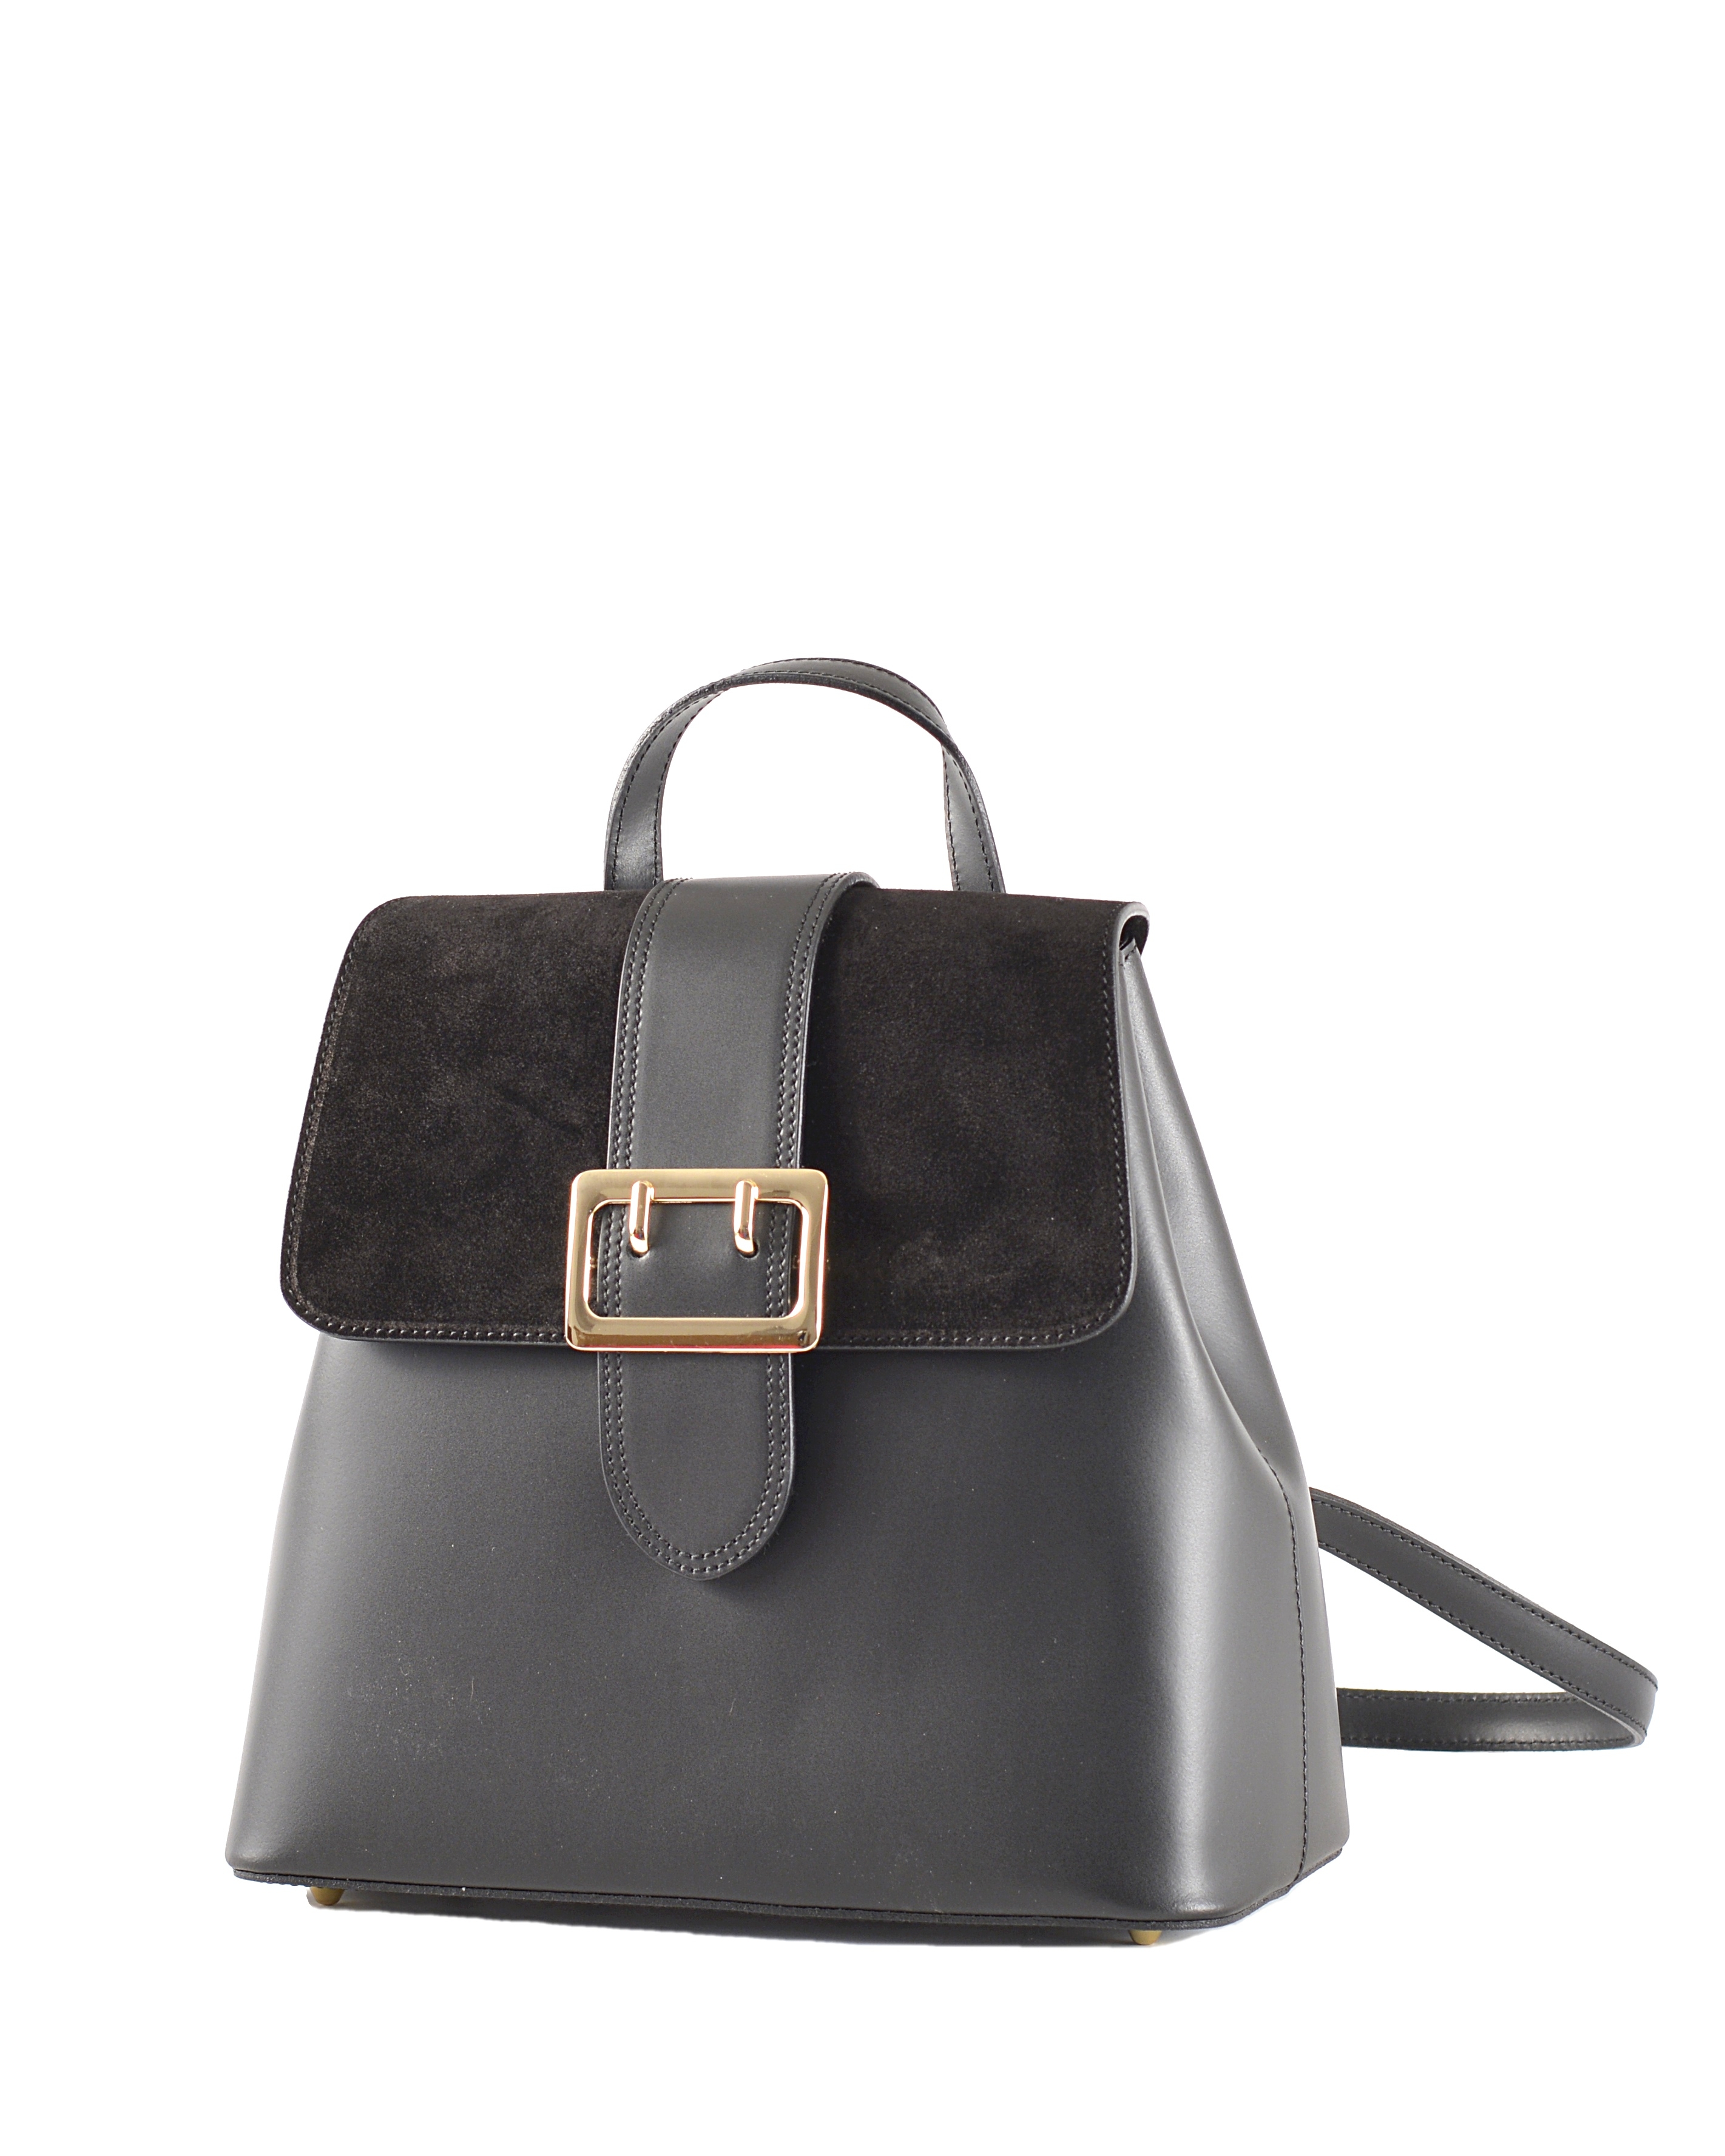 Elegantní dámský kožený batoh s klopnou černý, 29 x 14 x 28 (777-09CC)